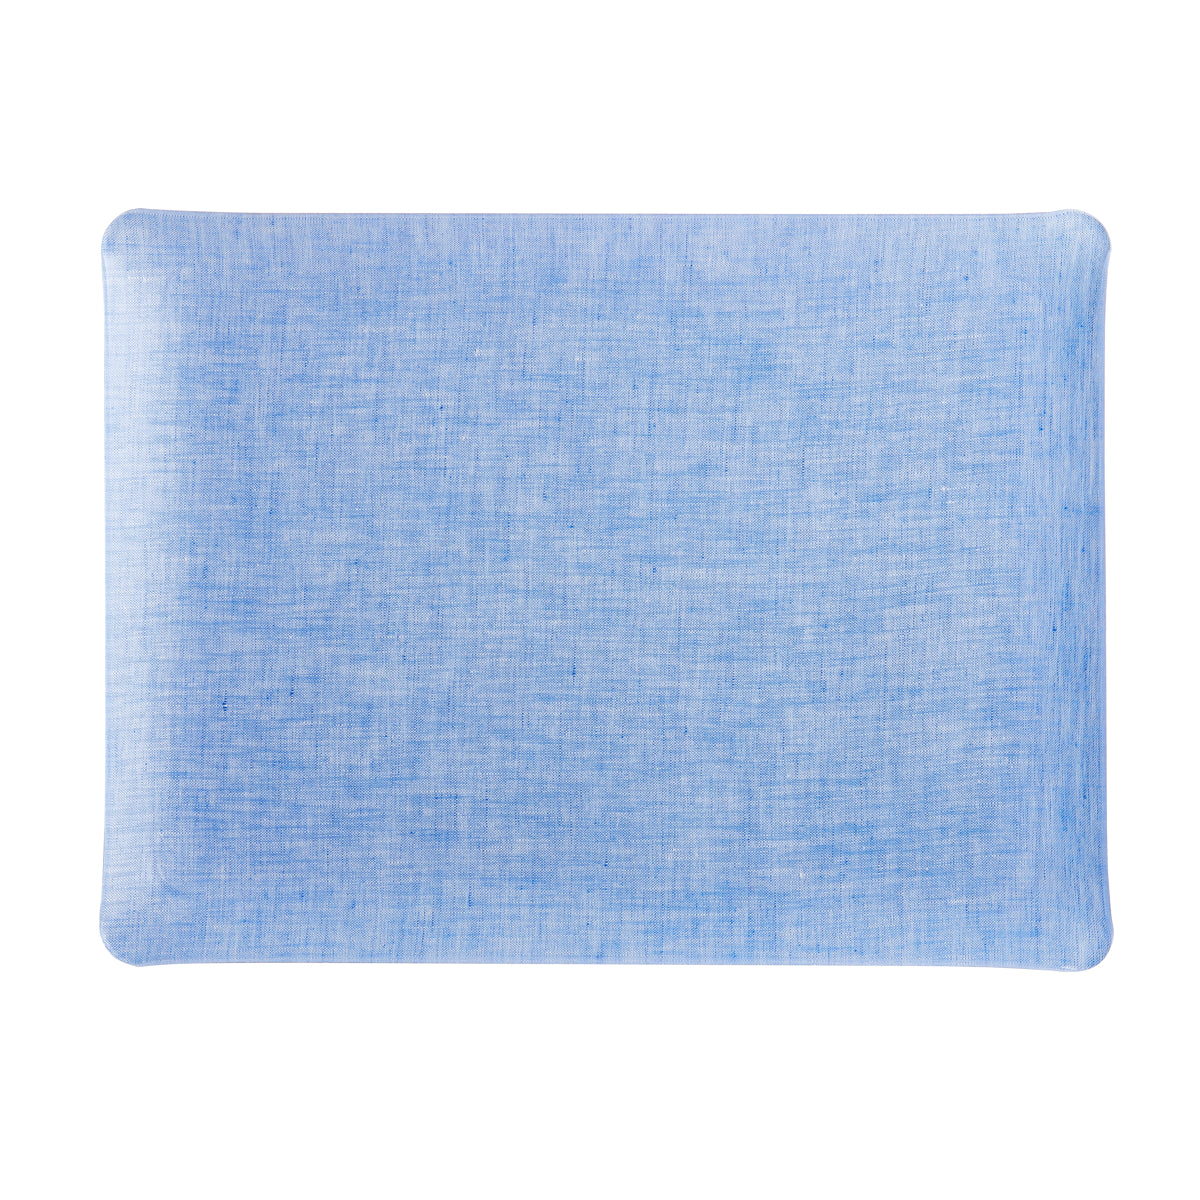 Nina Campbell Fabric Tray Medium - Blue